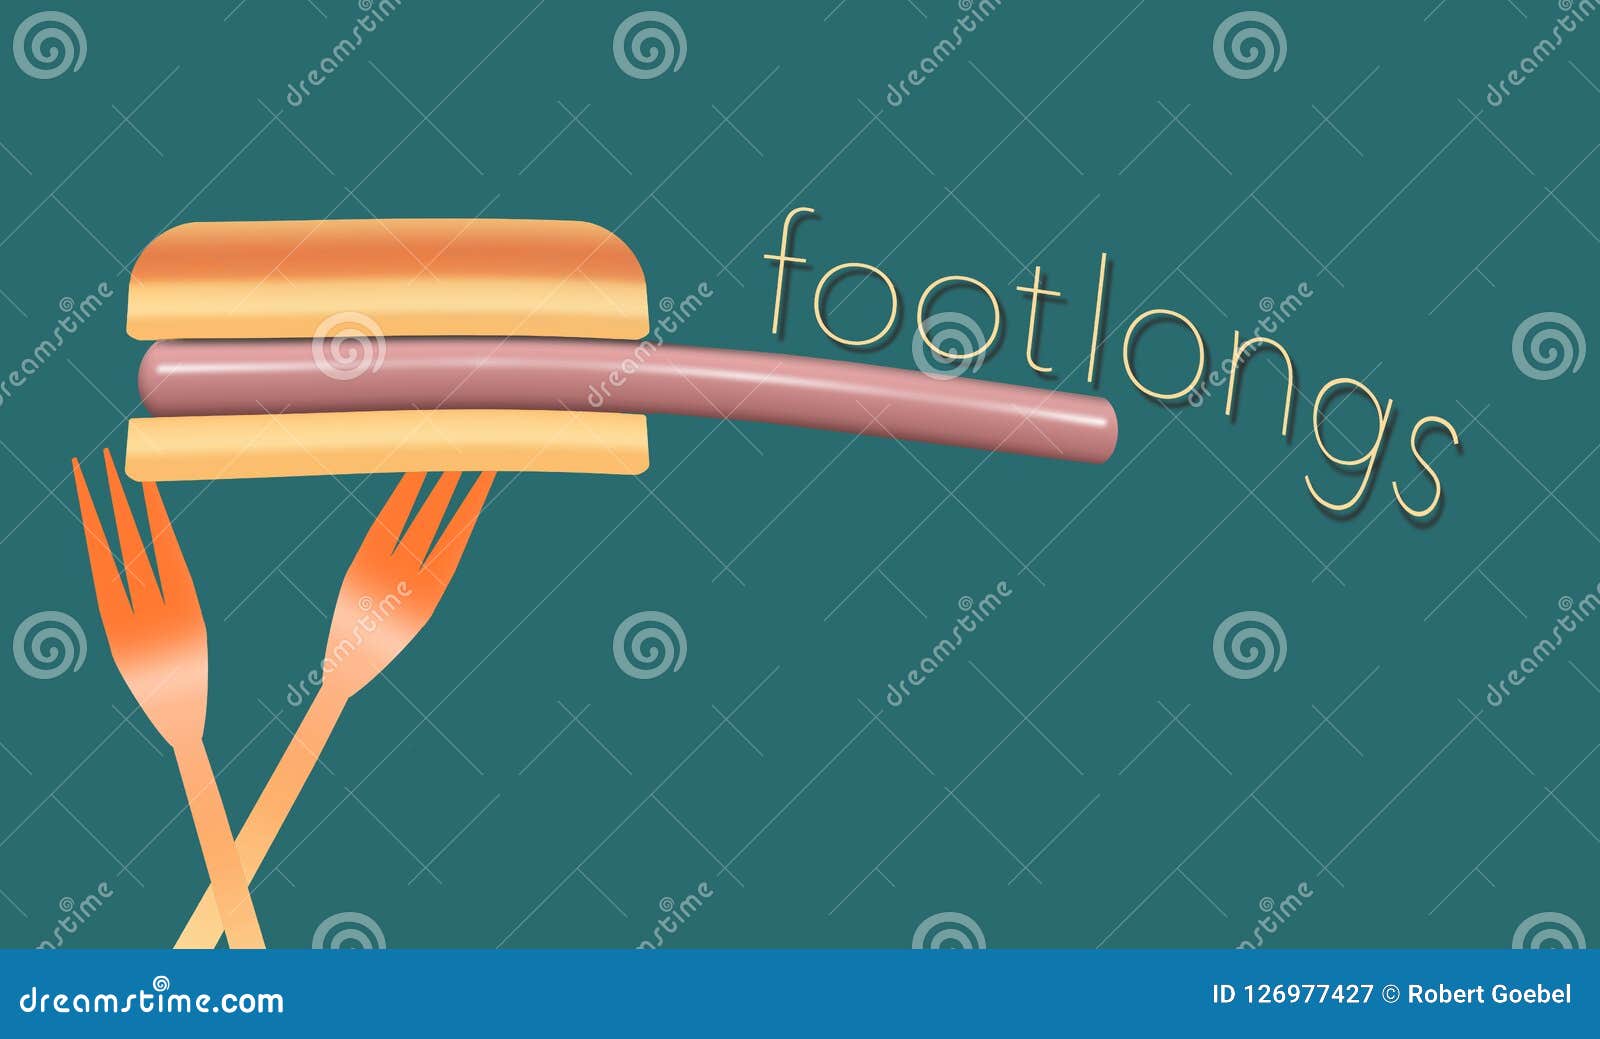 Горячие сосиски тема этого красочного изображения горячих сосисок, плюшки и пластичные вилки пикника Это иллюстрация